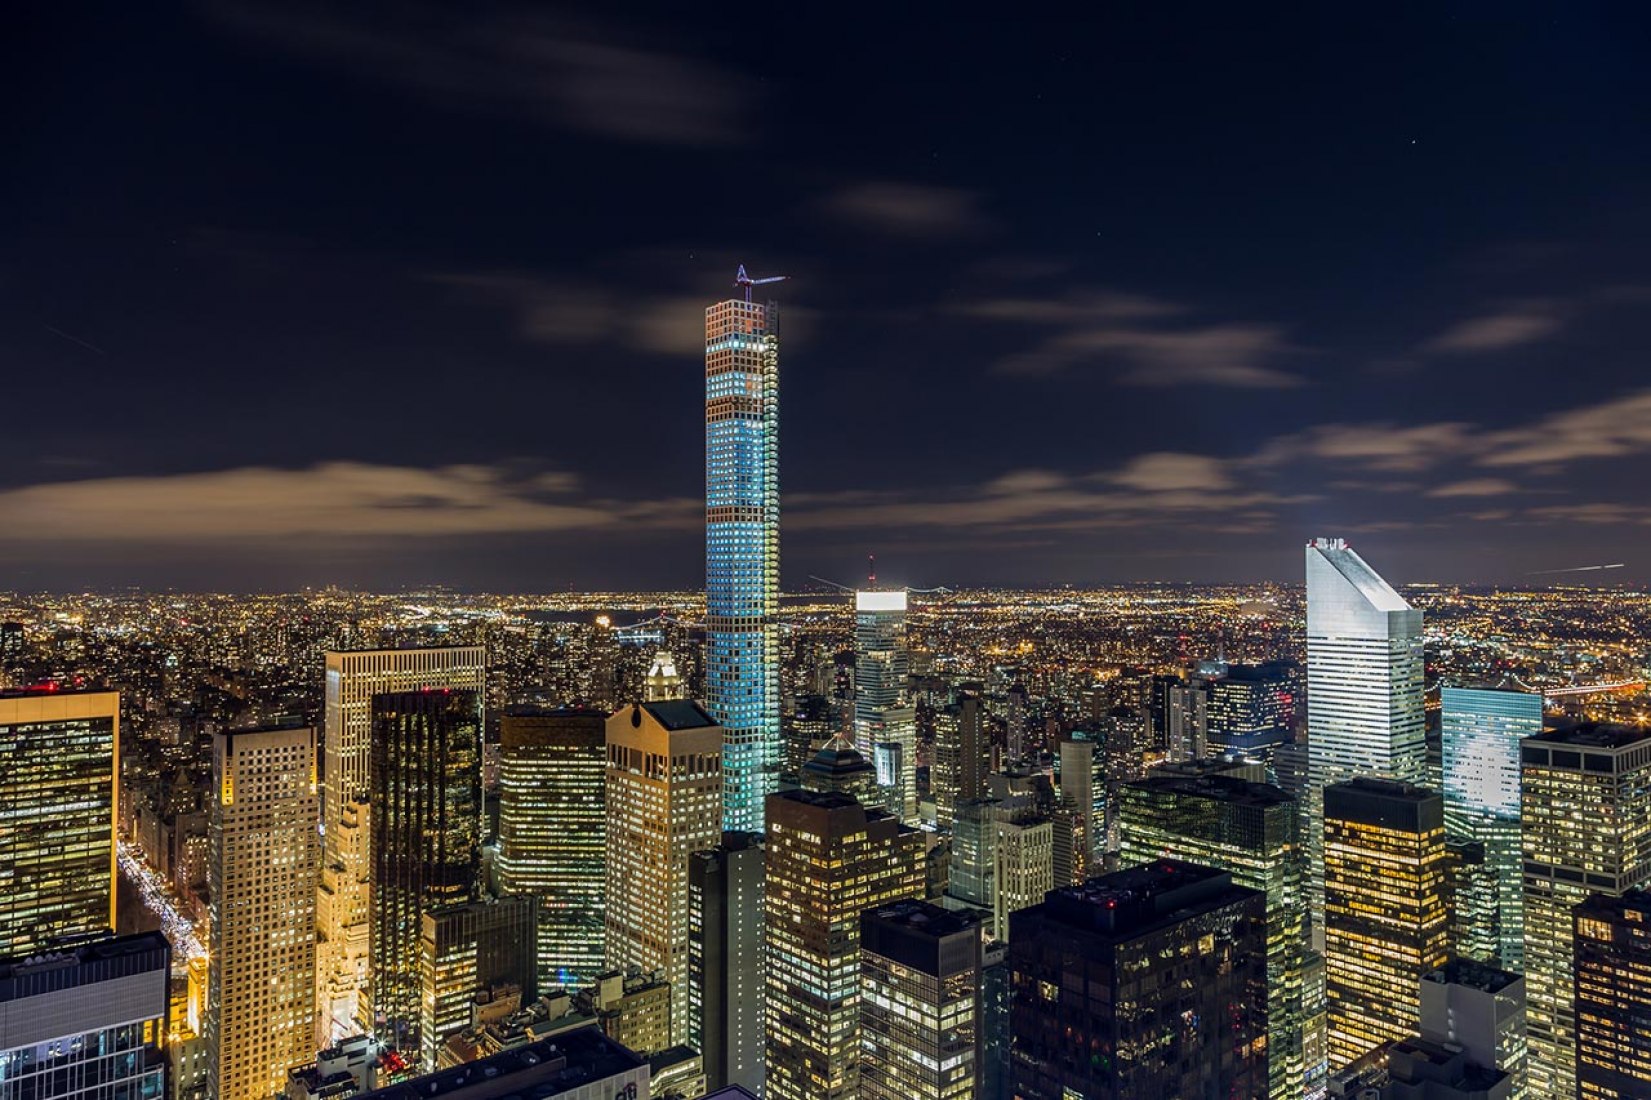 Imagen nocturna del rascacielos 432 Park Ave diseñado por Viñoly. Imagen  de Flickr user Ikaloti